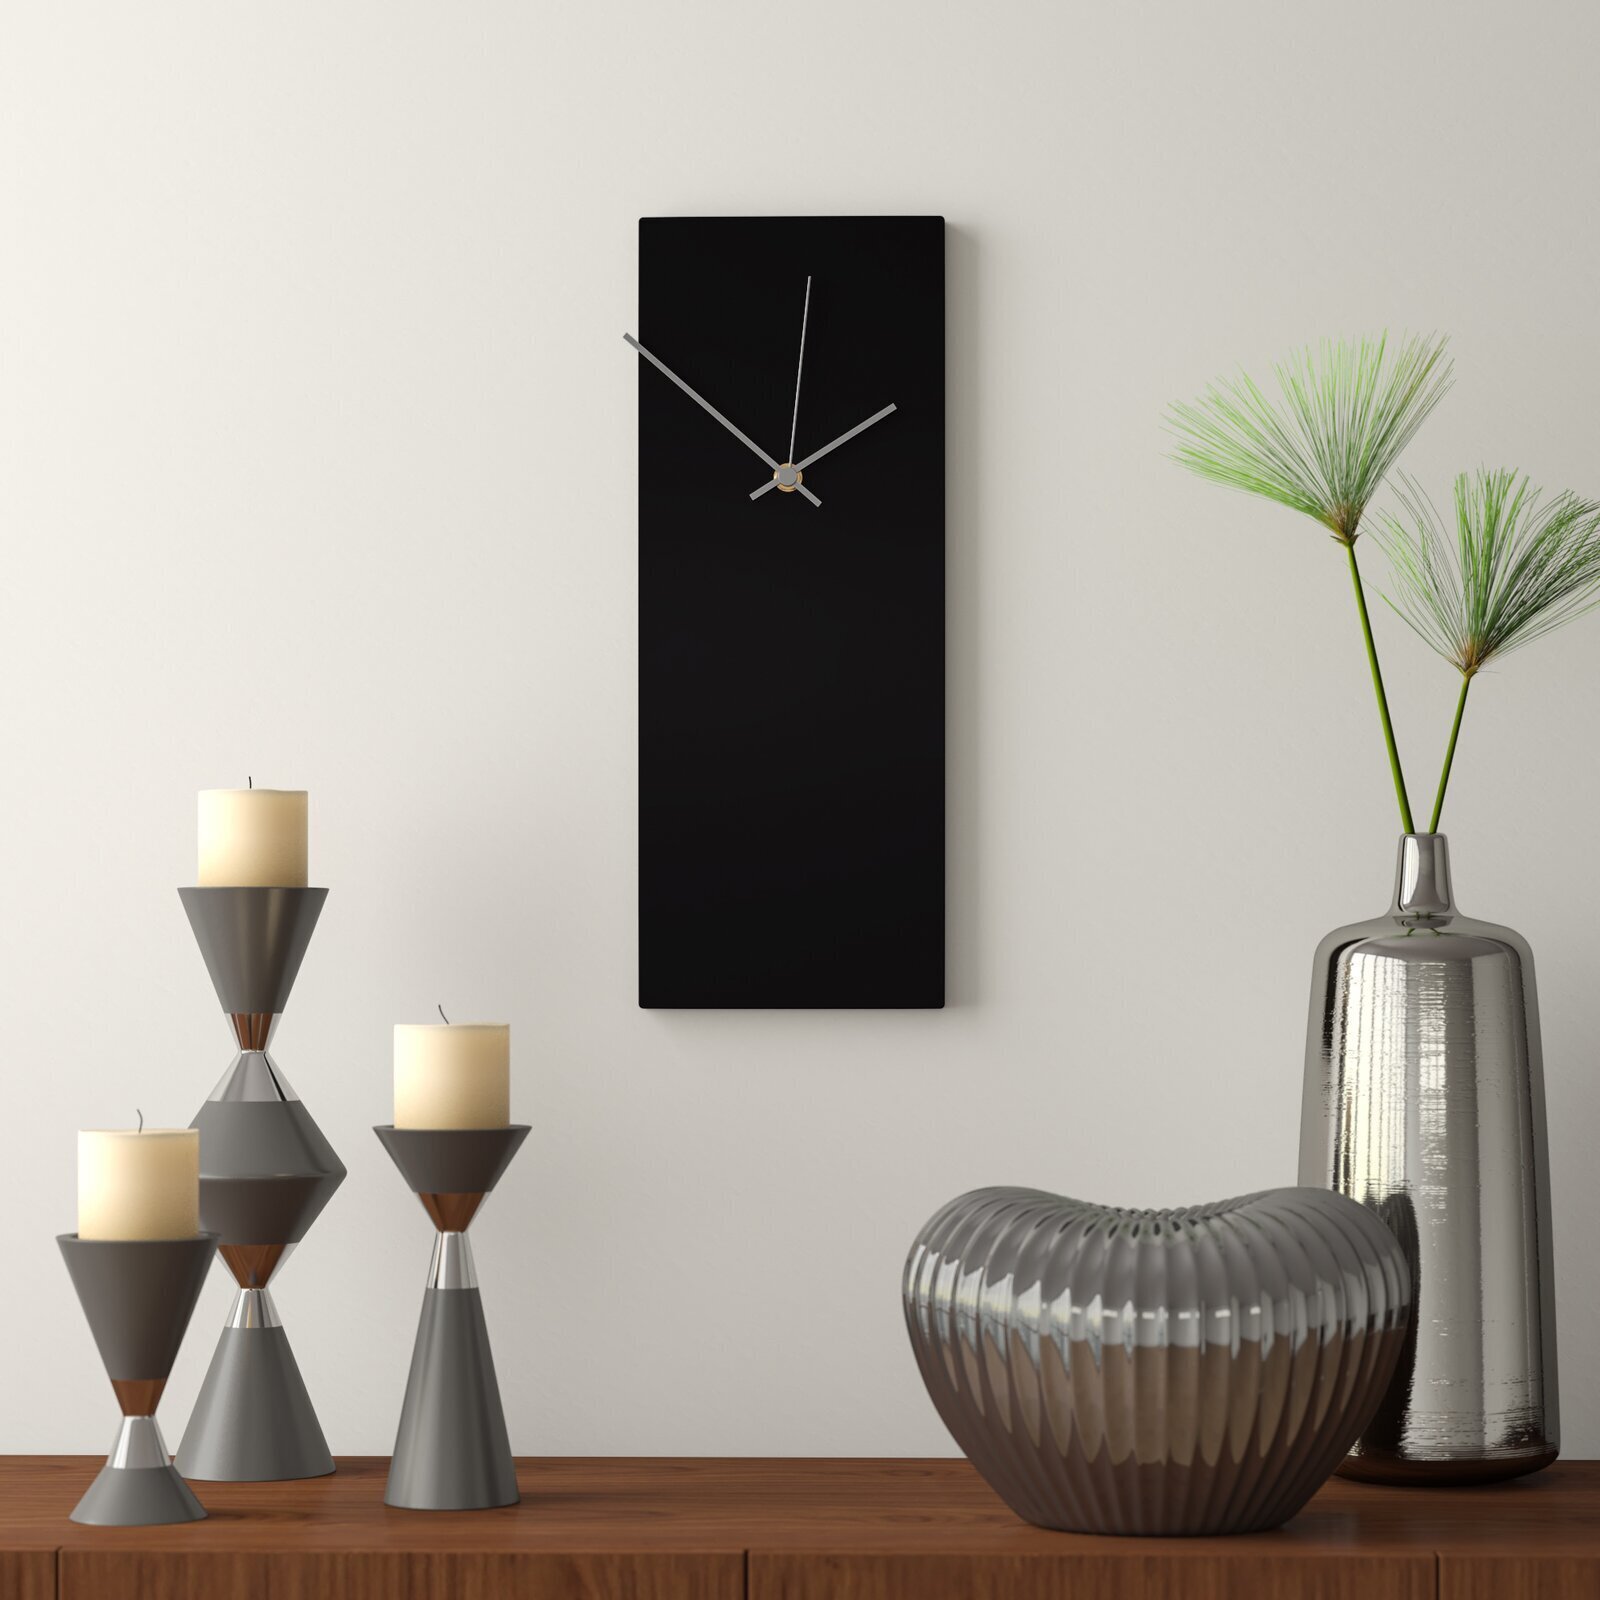 Minimalist narrow wall clock